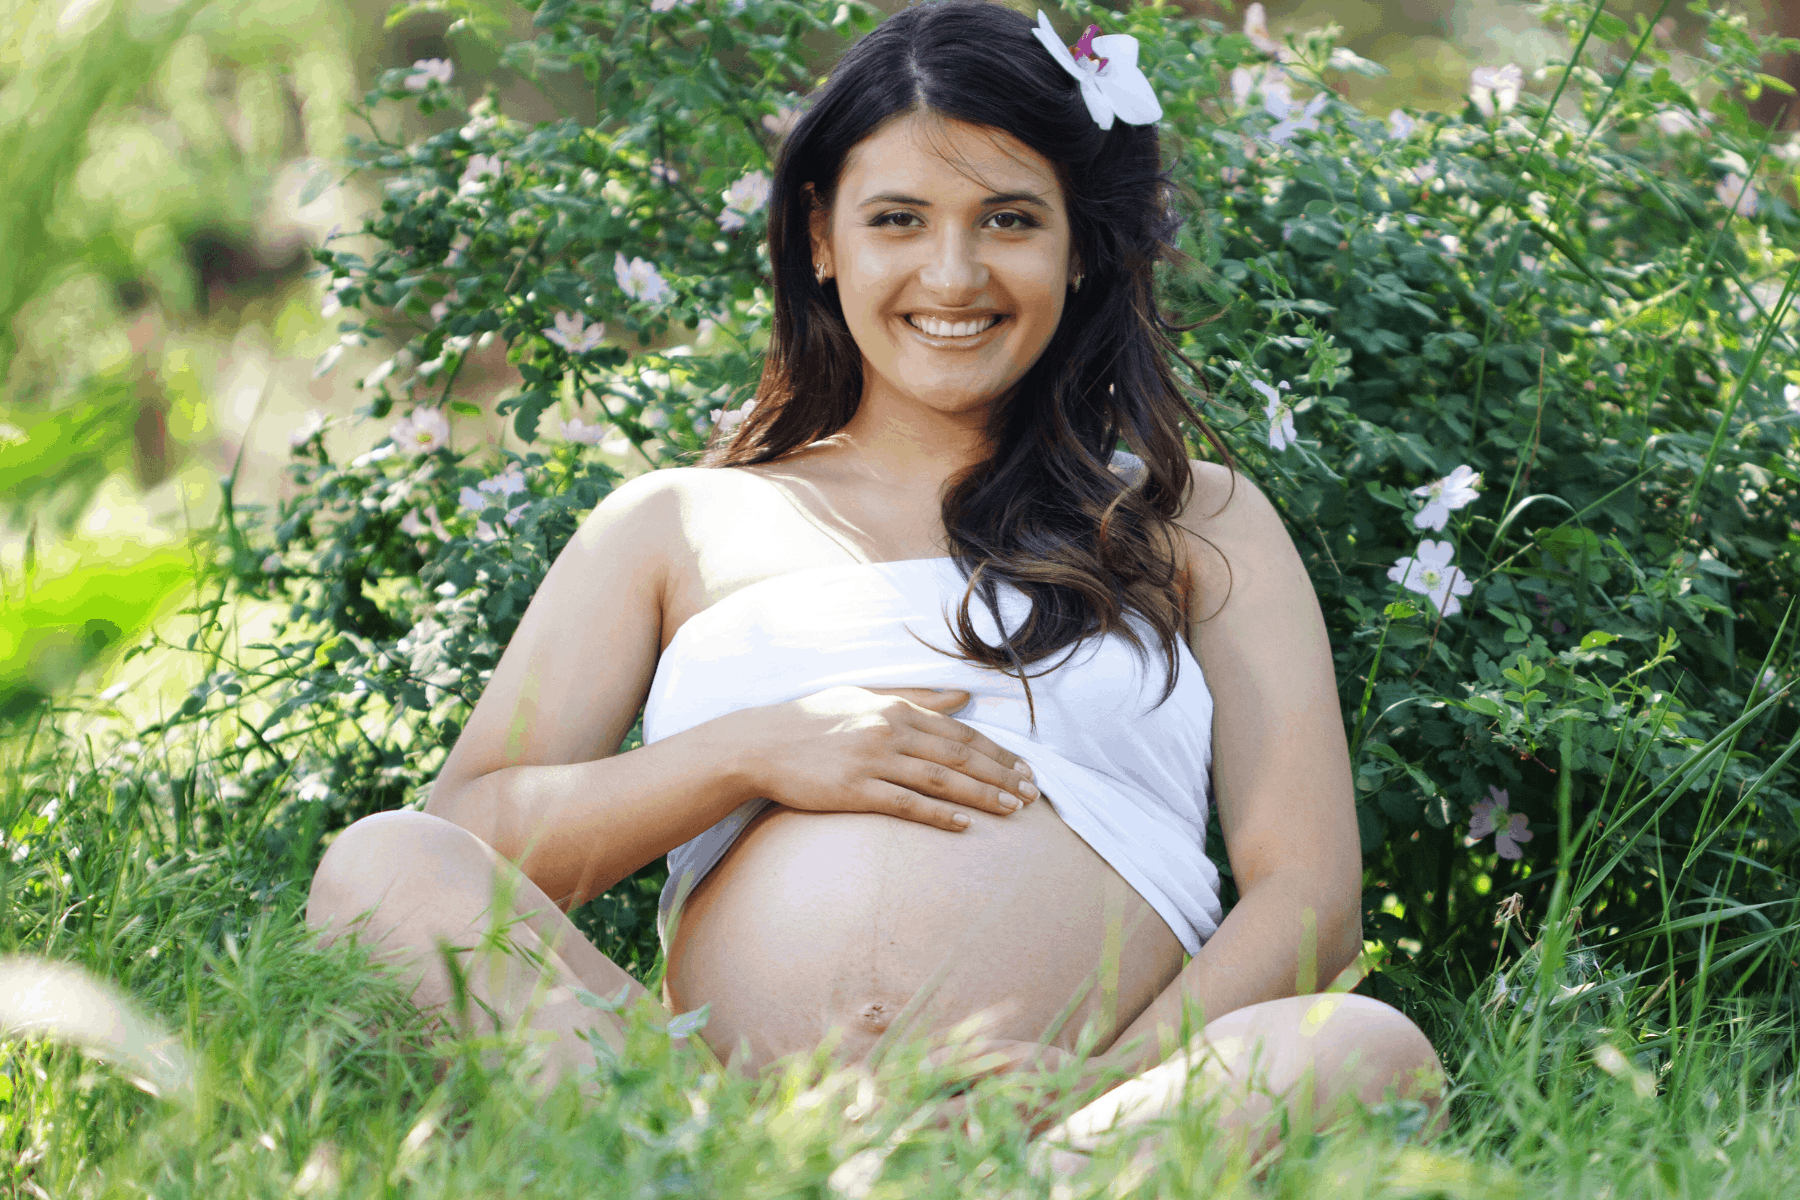 Pregnancy photoshoot idea - garden